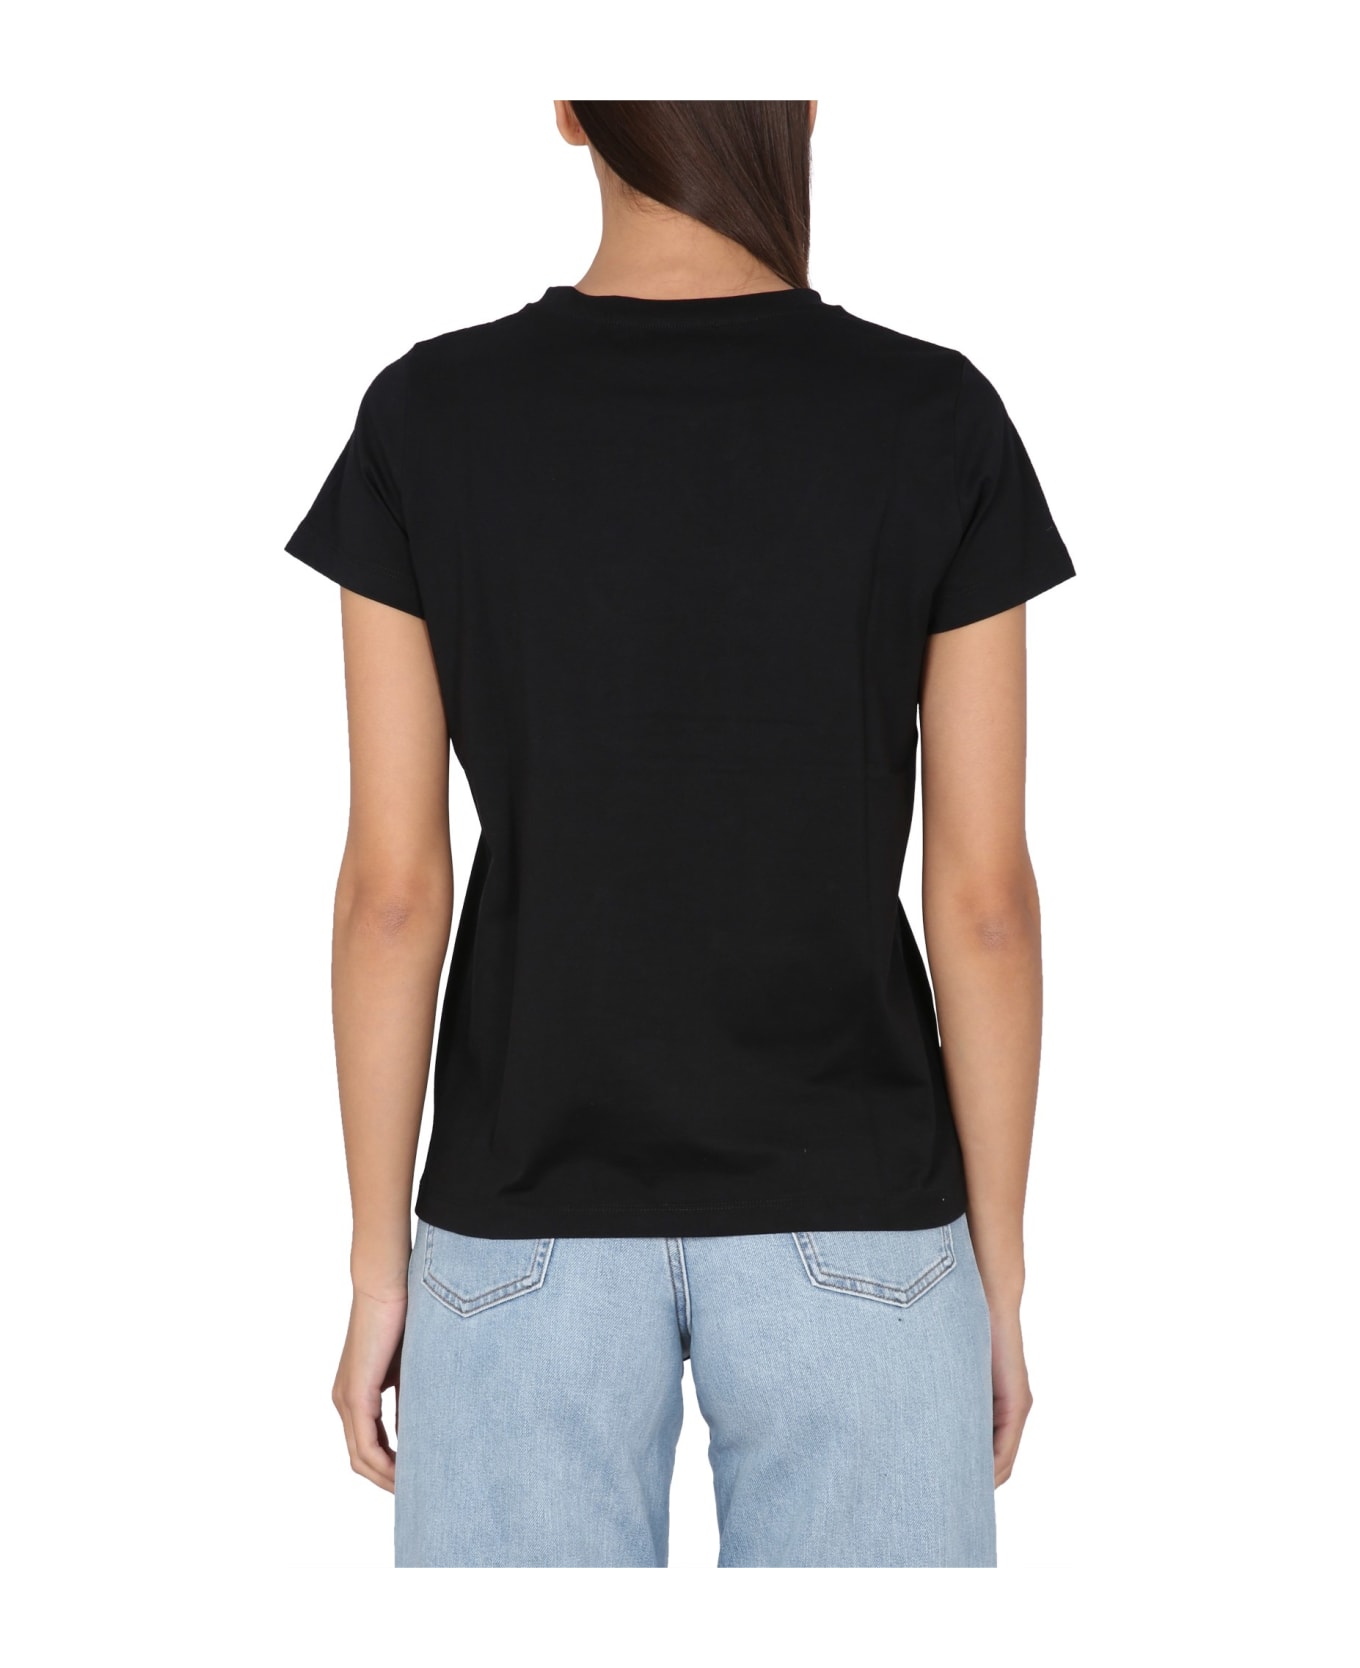 A.P.C. Cotton Crew-neck T-shirt - black